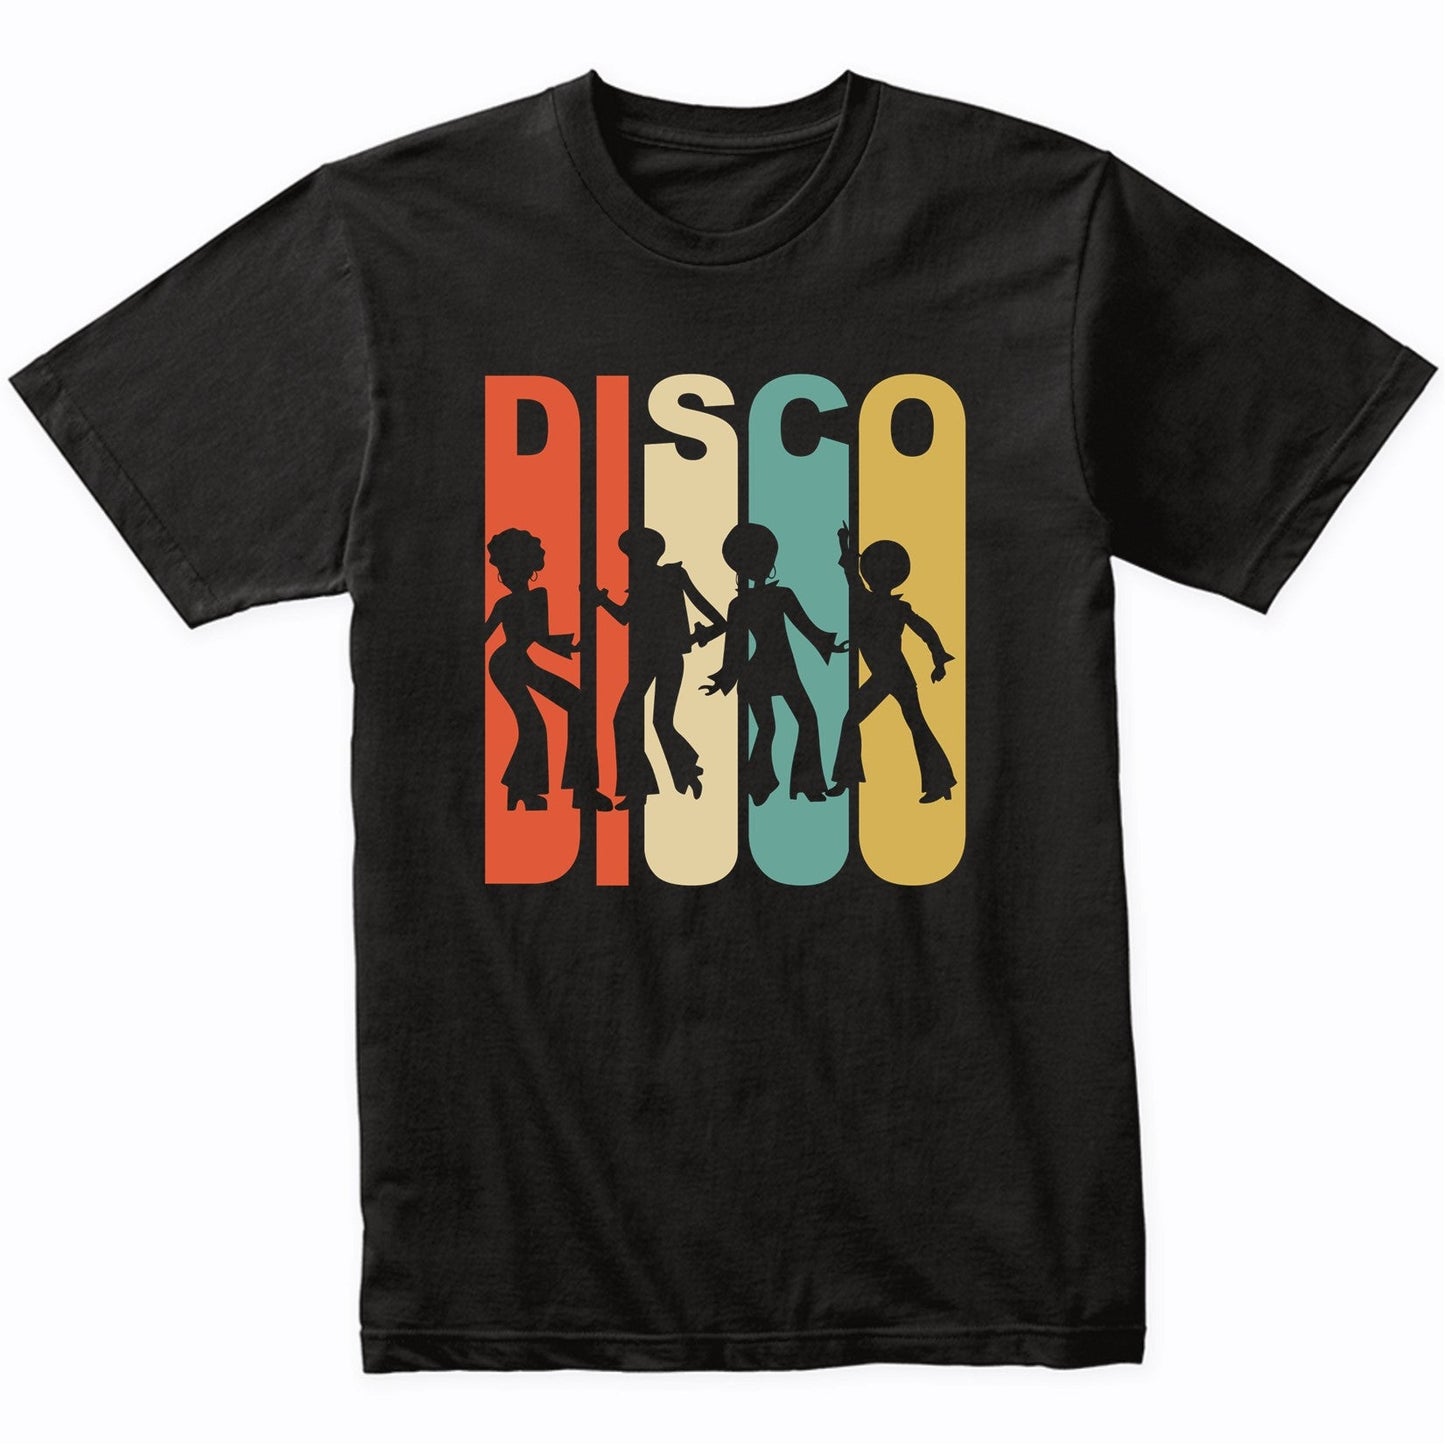 Vintage Retro 1970's Style Disco Dancers T-Shirt